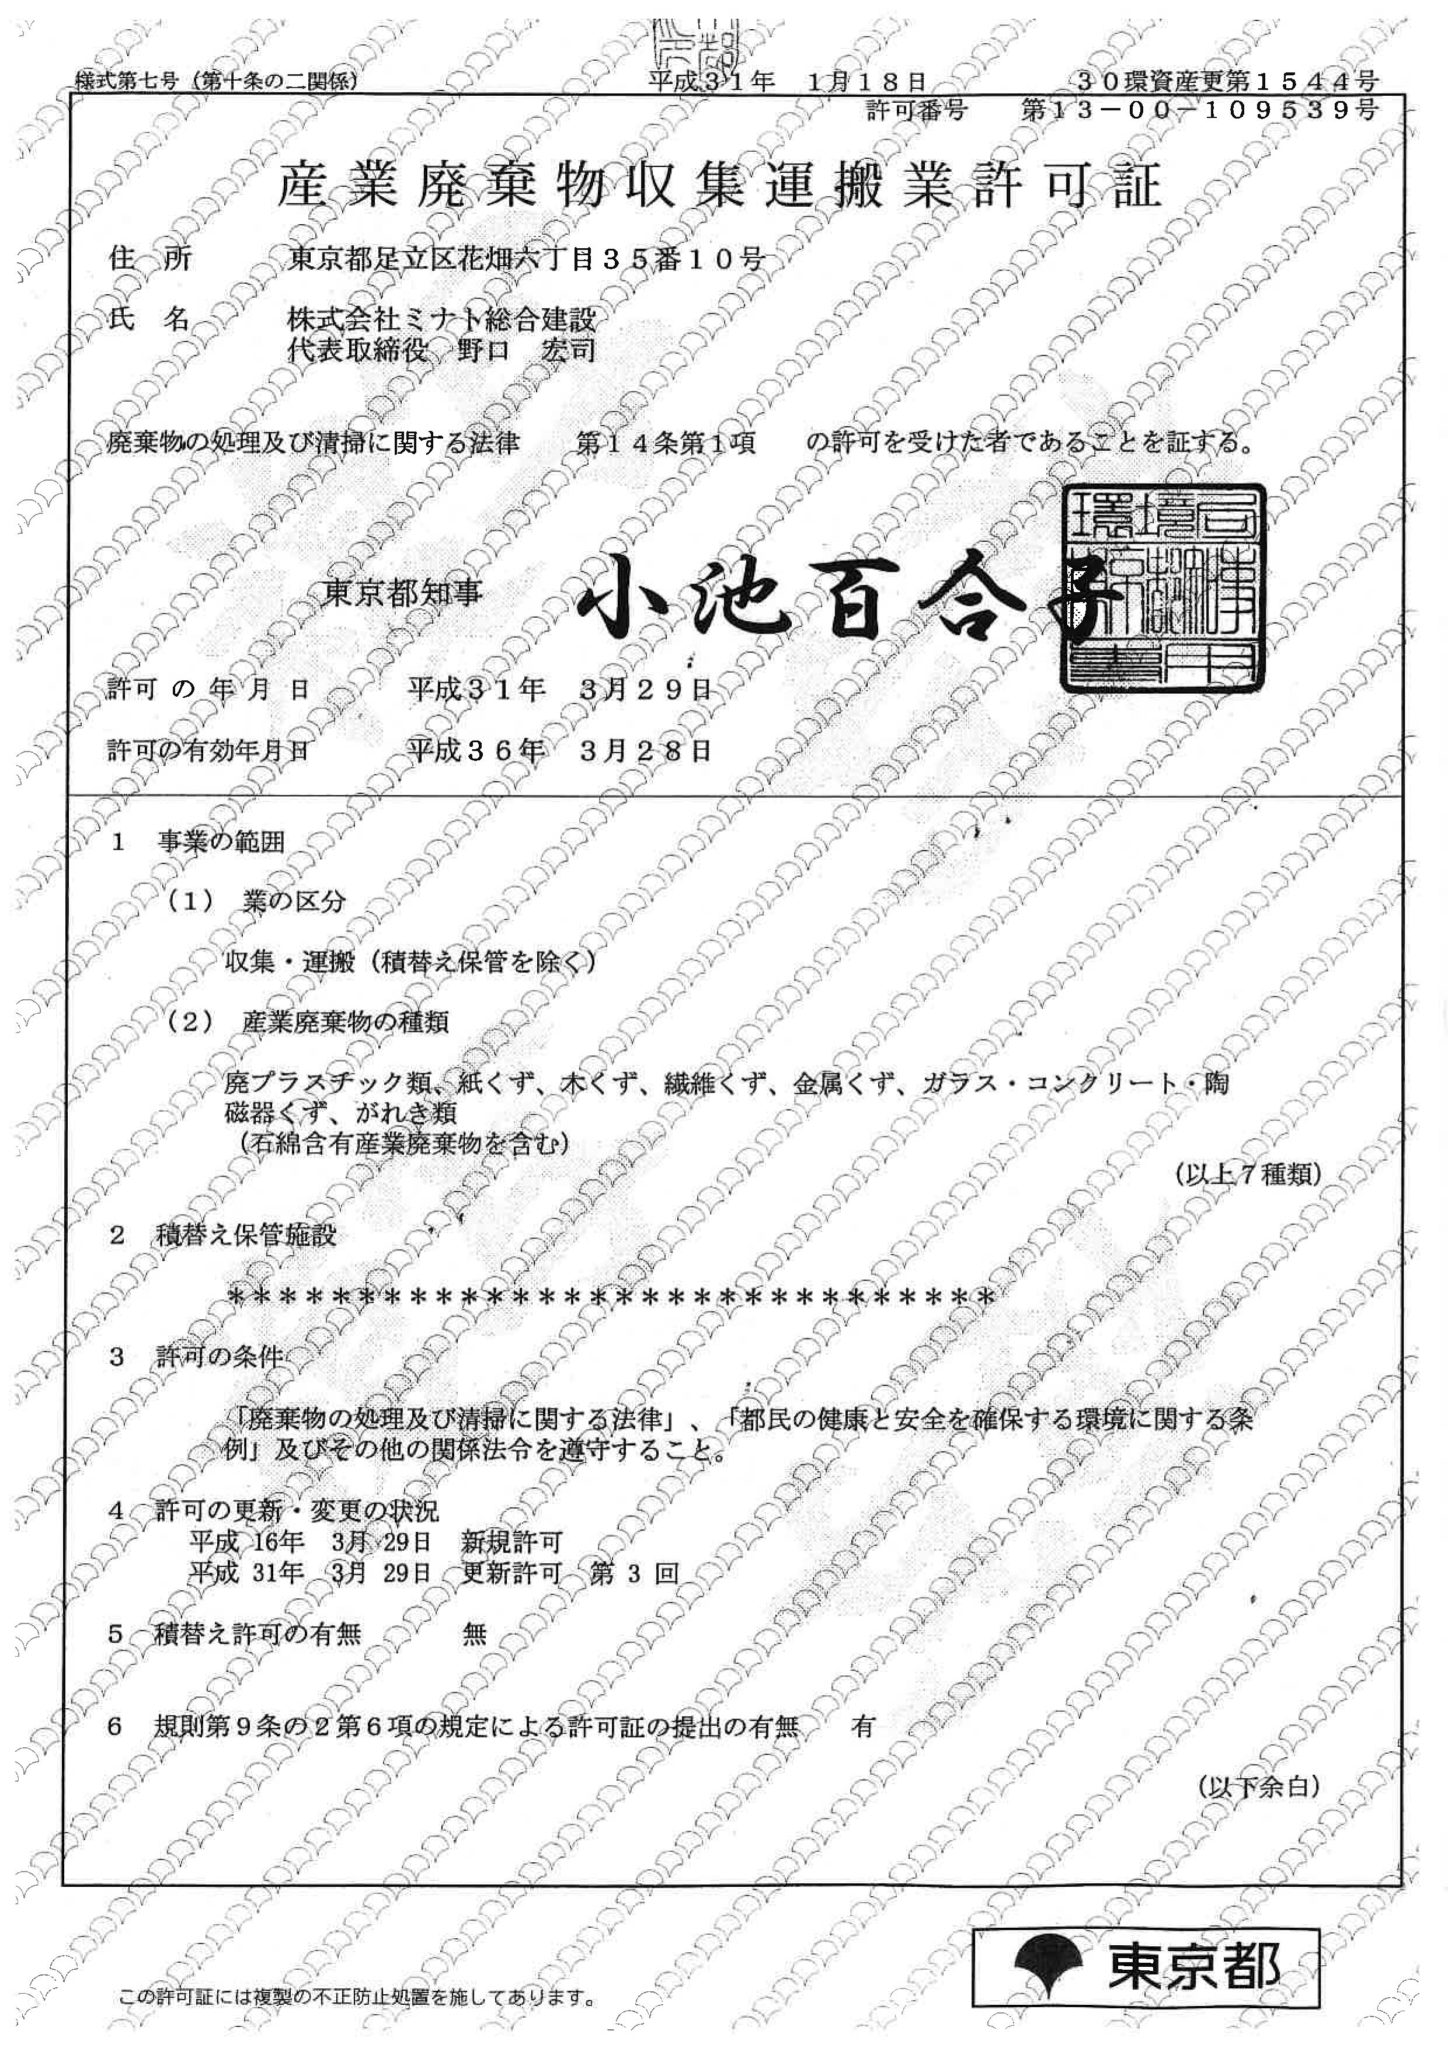 産業廃棄物収集運搬許可証
（東京都）